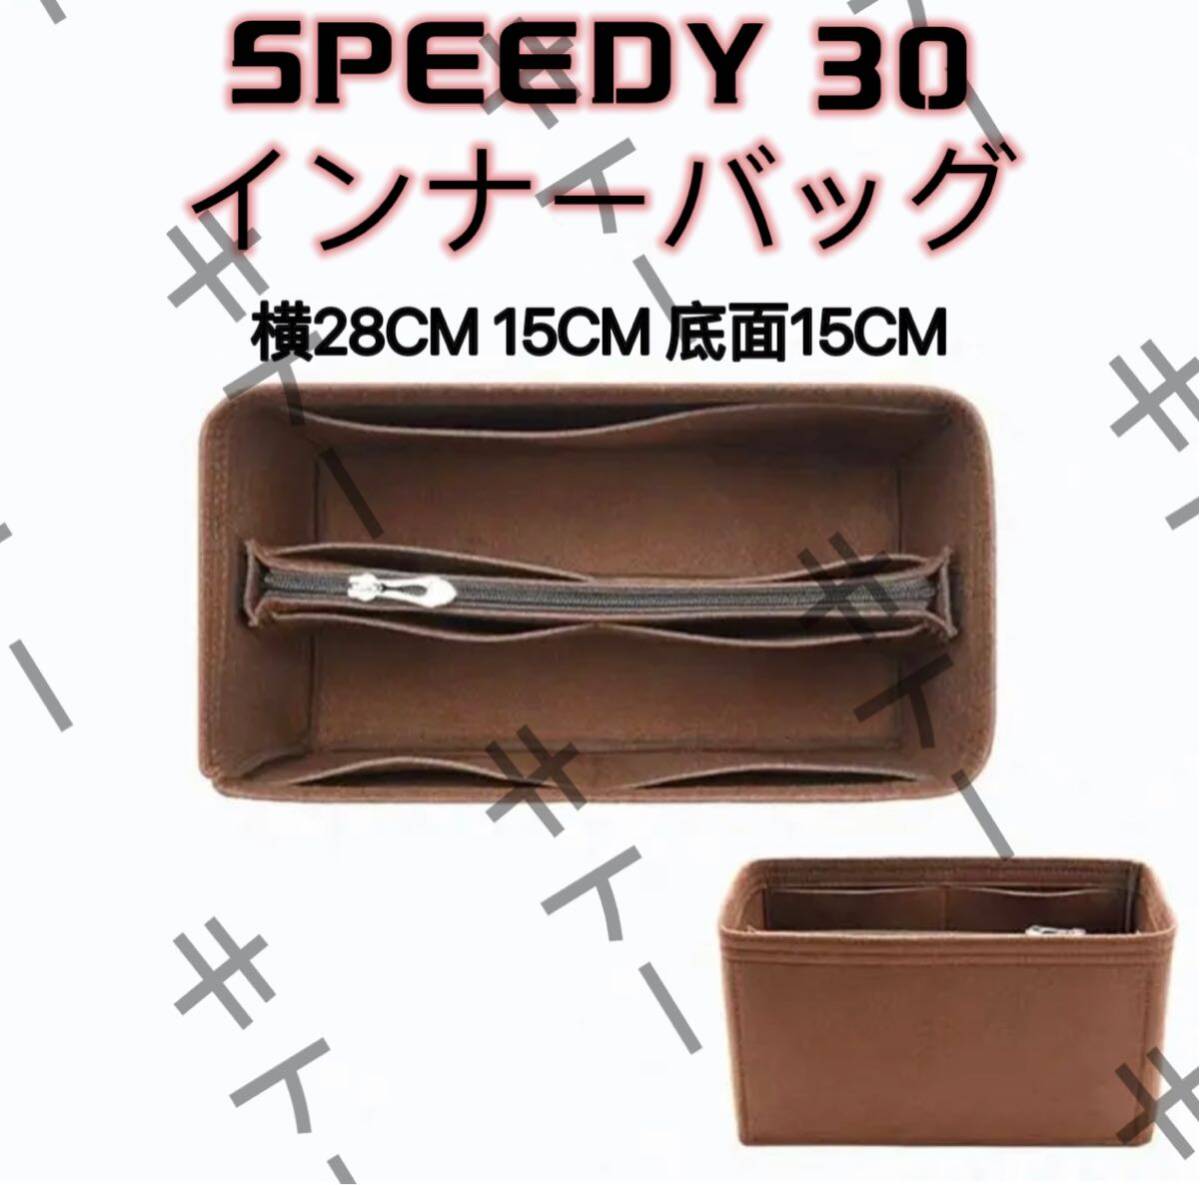 スピーディspeedy30 専用バッグインバッグ インナーバッグ フェルト素材の画像1